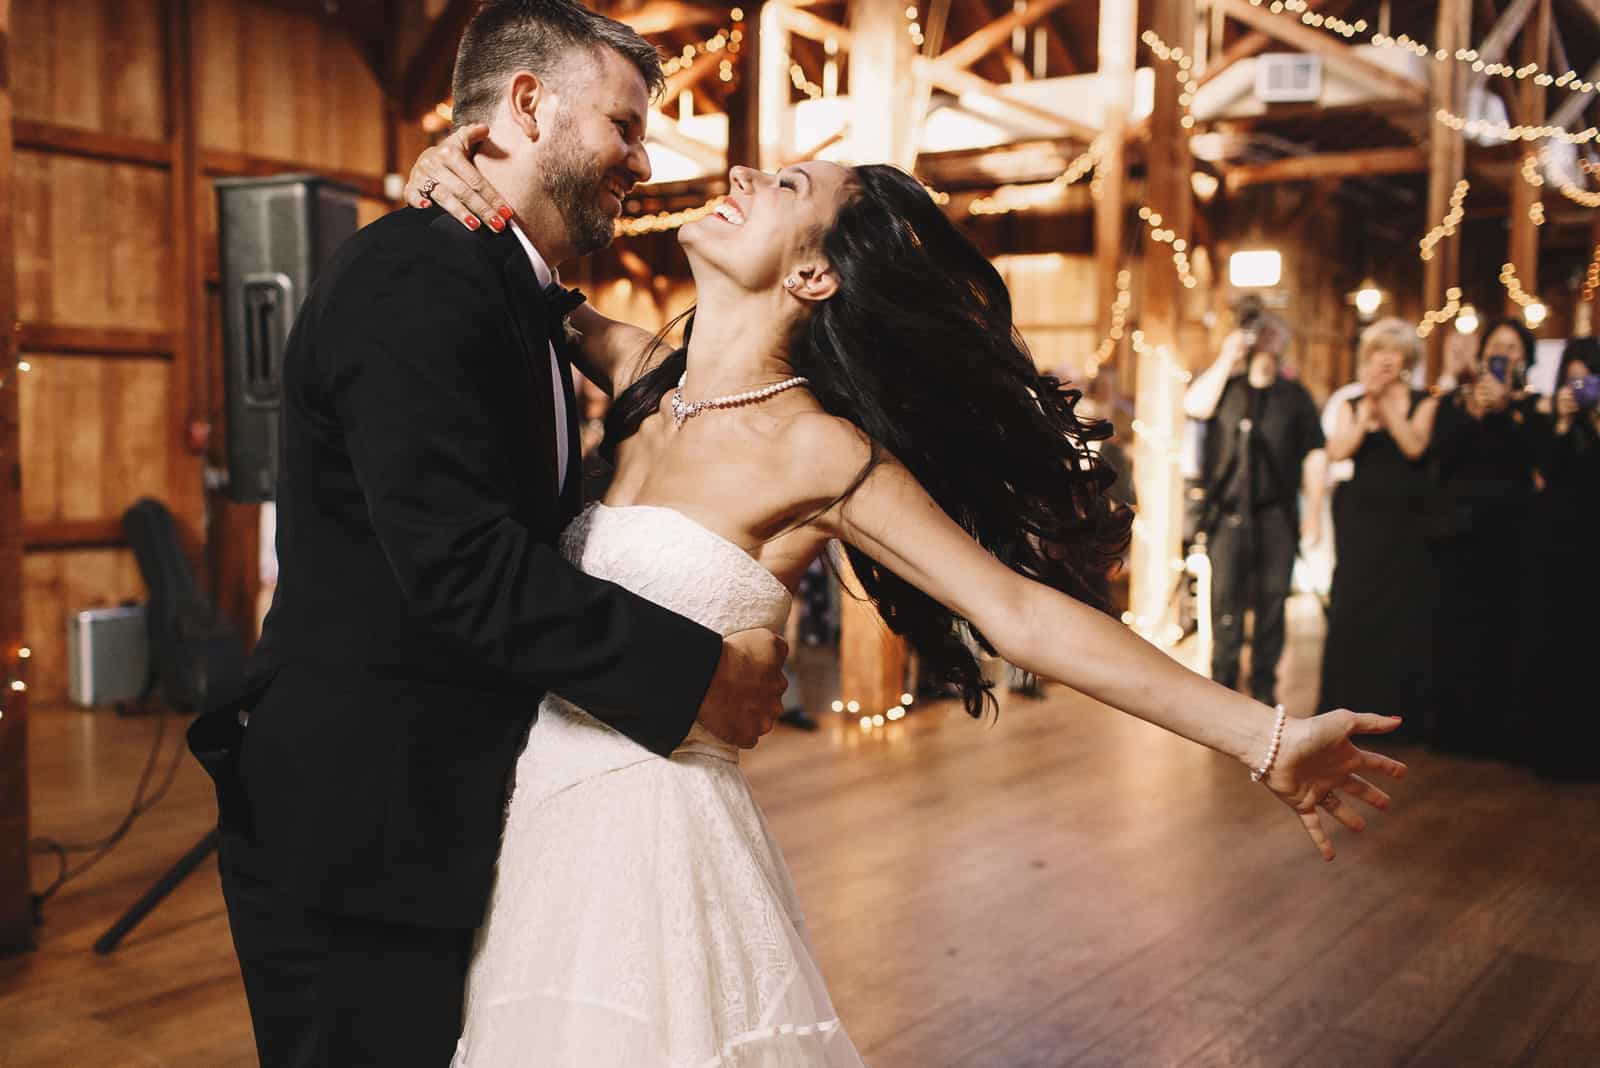 Die Braut schüttelt ihr dunkles Haar, während sie mit einem Bräutigam in einer Holzhalle tanzt